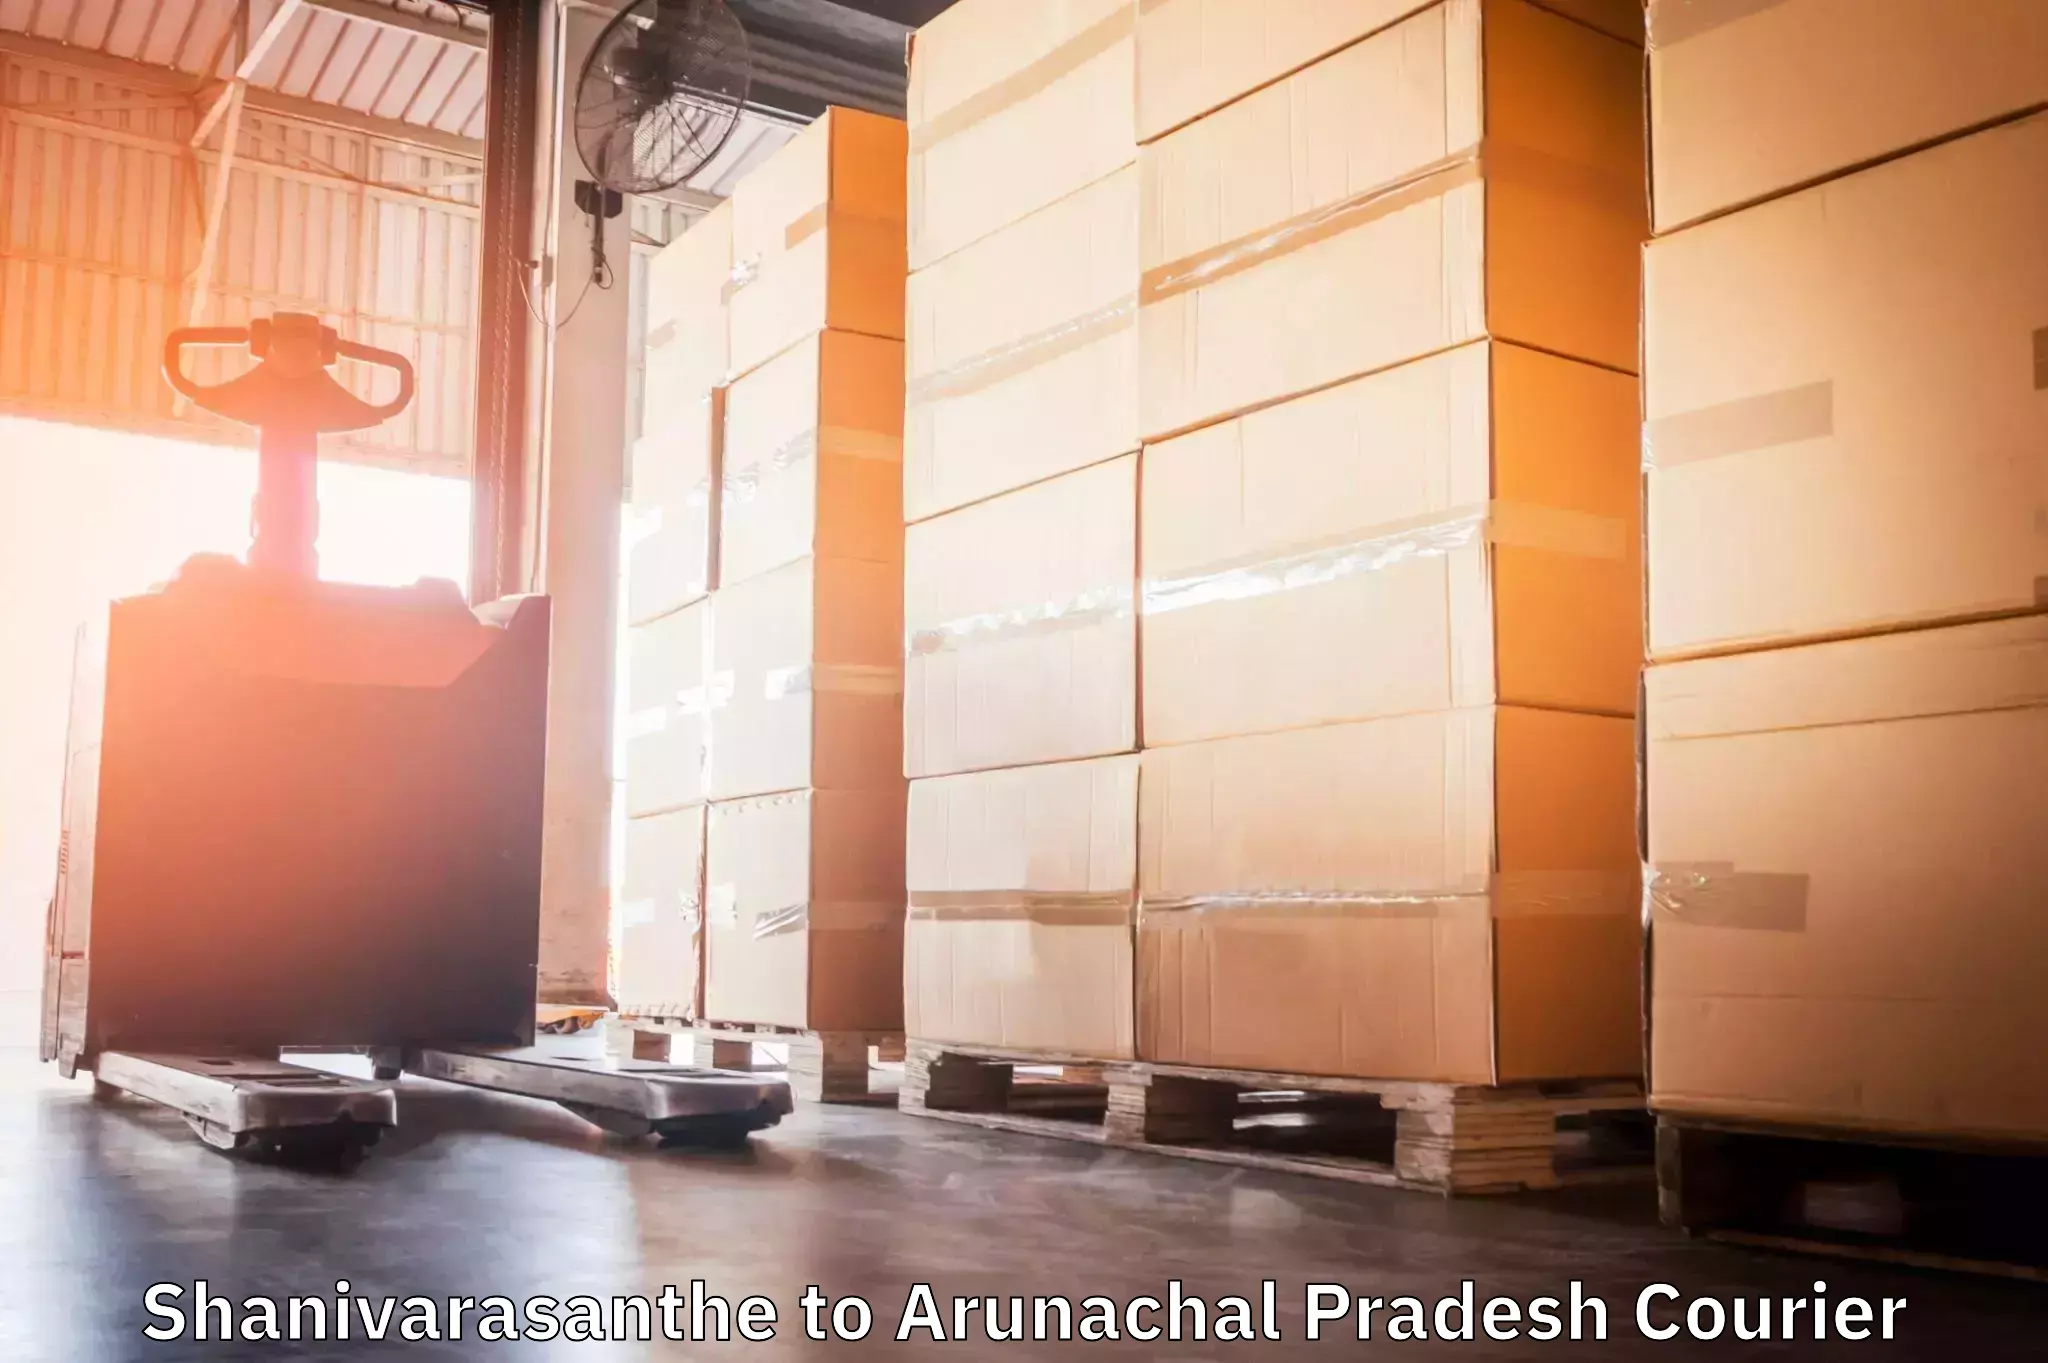 Cash on delivery service Shanivarasanthe to Arunachal Pradesh